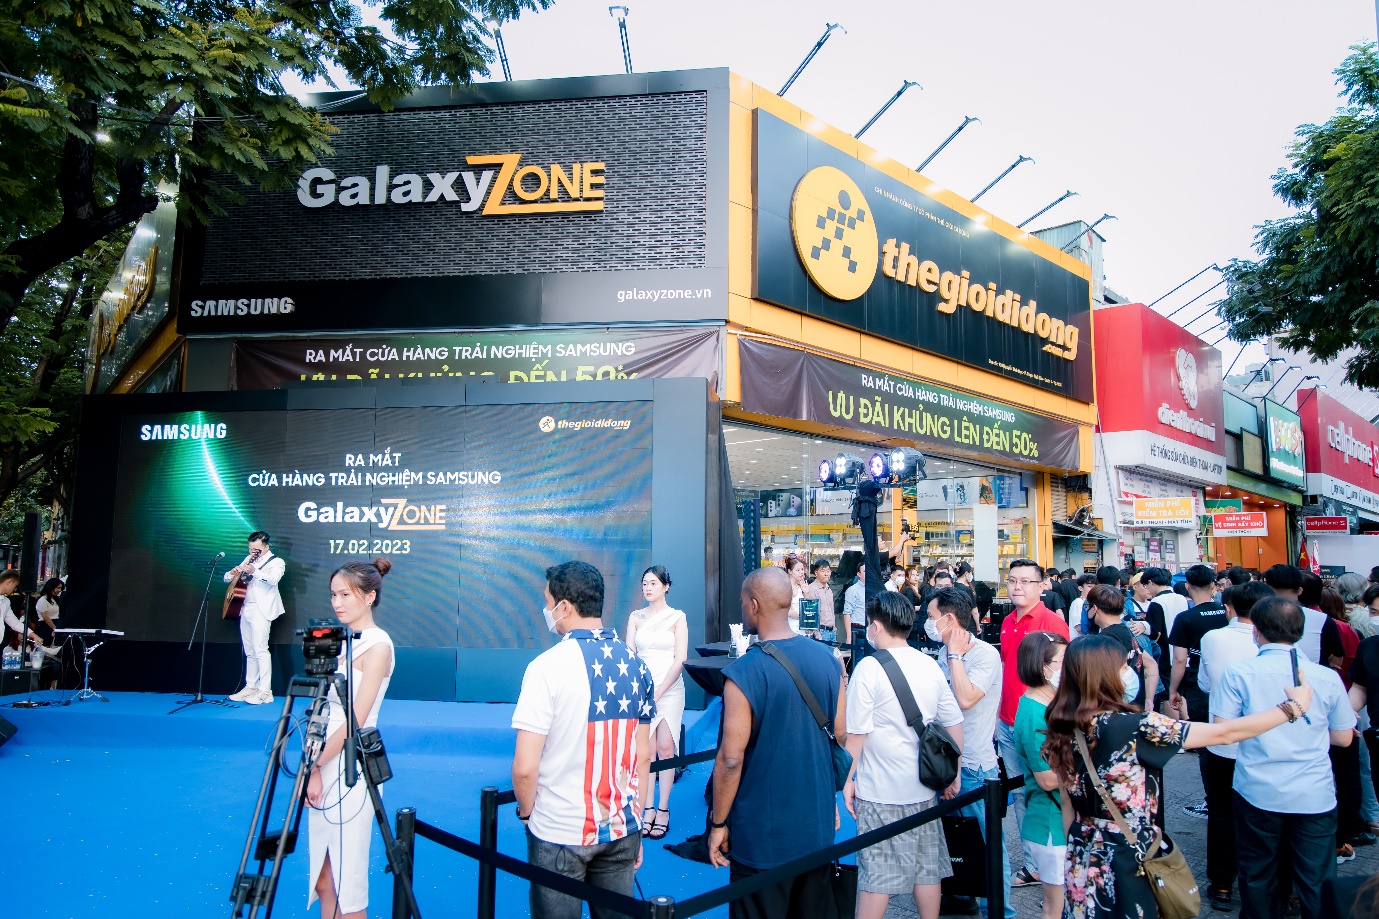 Giới trẻ háo hức nhận Galaxy S23 Series sớm trong ngày khai trương cửa hàng trải nghiệm Samsung GalaxyZone - ảnh 1